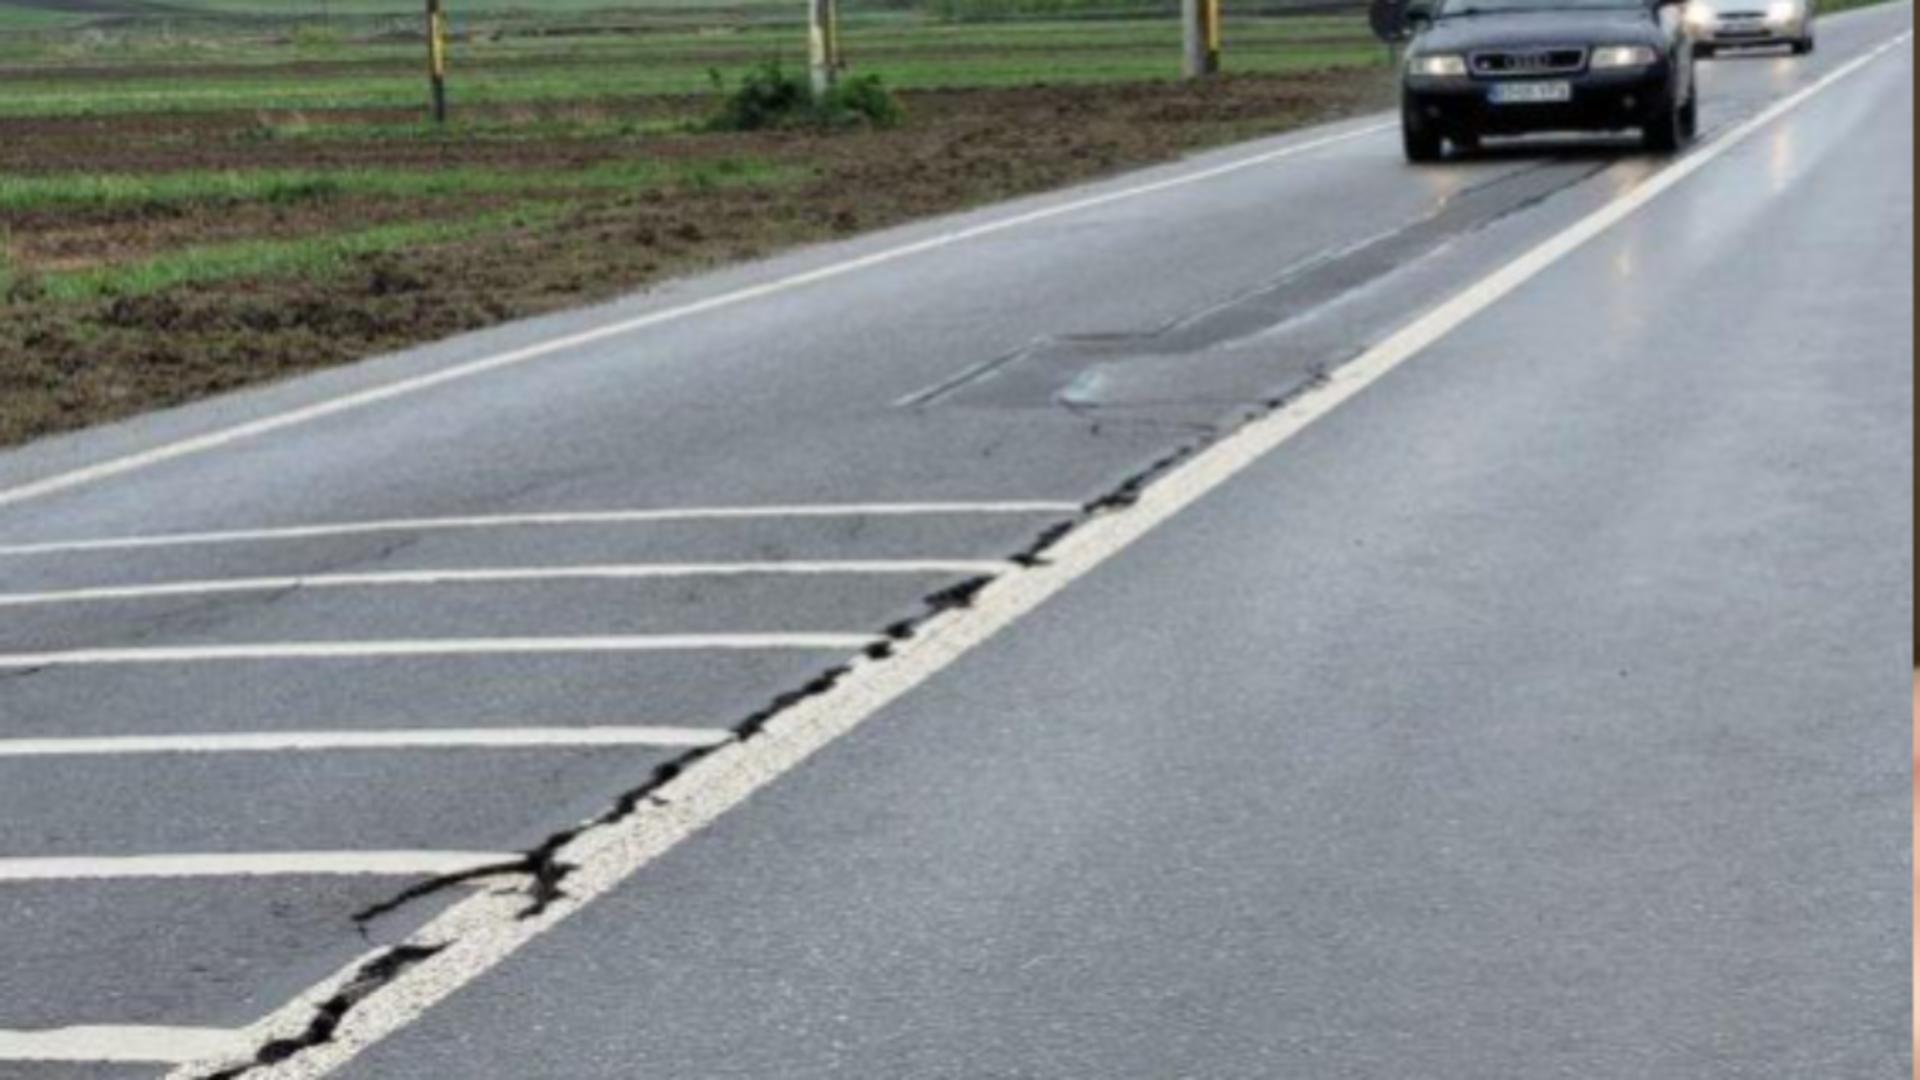 Drumul care leagă județele Botoșani și Iași a început să se surpe, deși a fost reabilitat recent/ Captură foto Monitorul de Botoșani